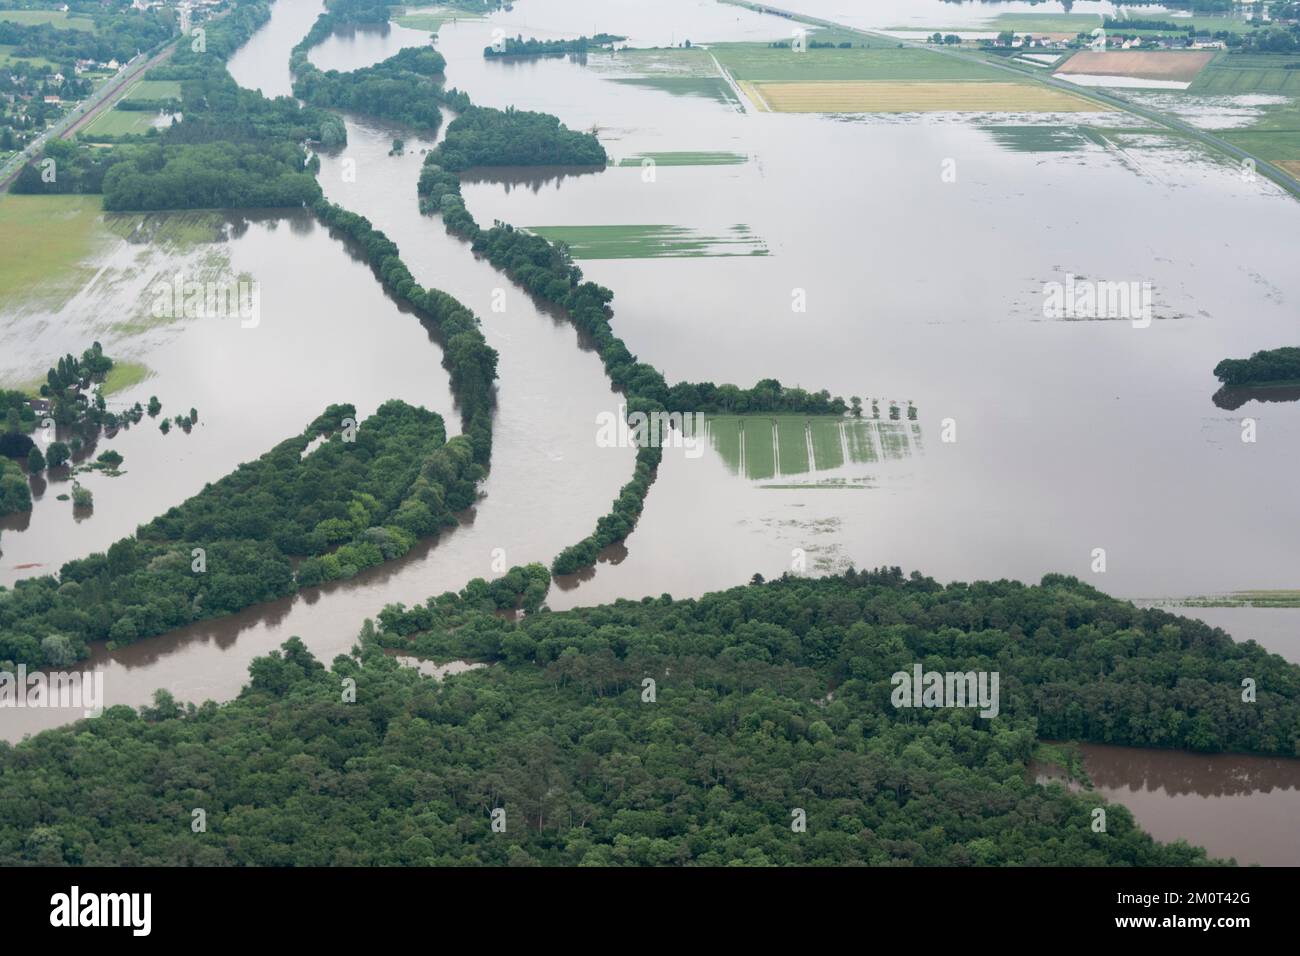 Francia, Indre-et-Loire (37), el río Cher emerge de su lecho durante los diez años de inundación de junio de 2016. Sólo los árboles a lo largo del río todavía permiten identificar su lecho principal. Foto de stock